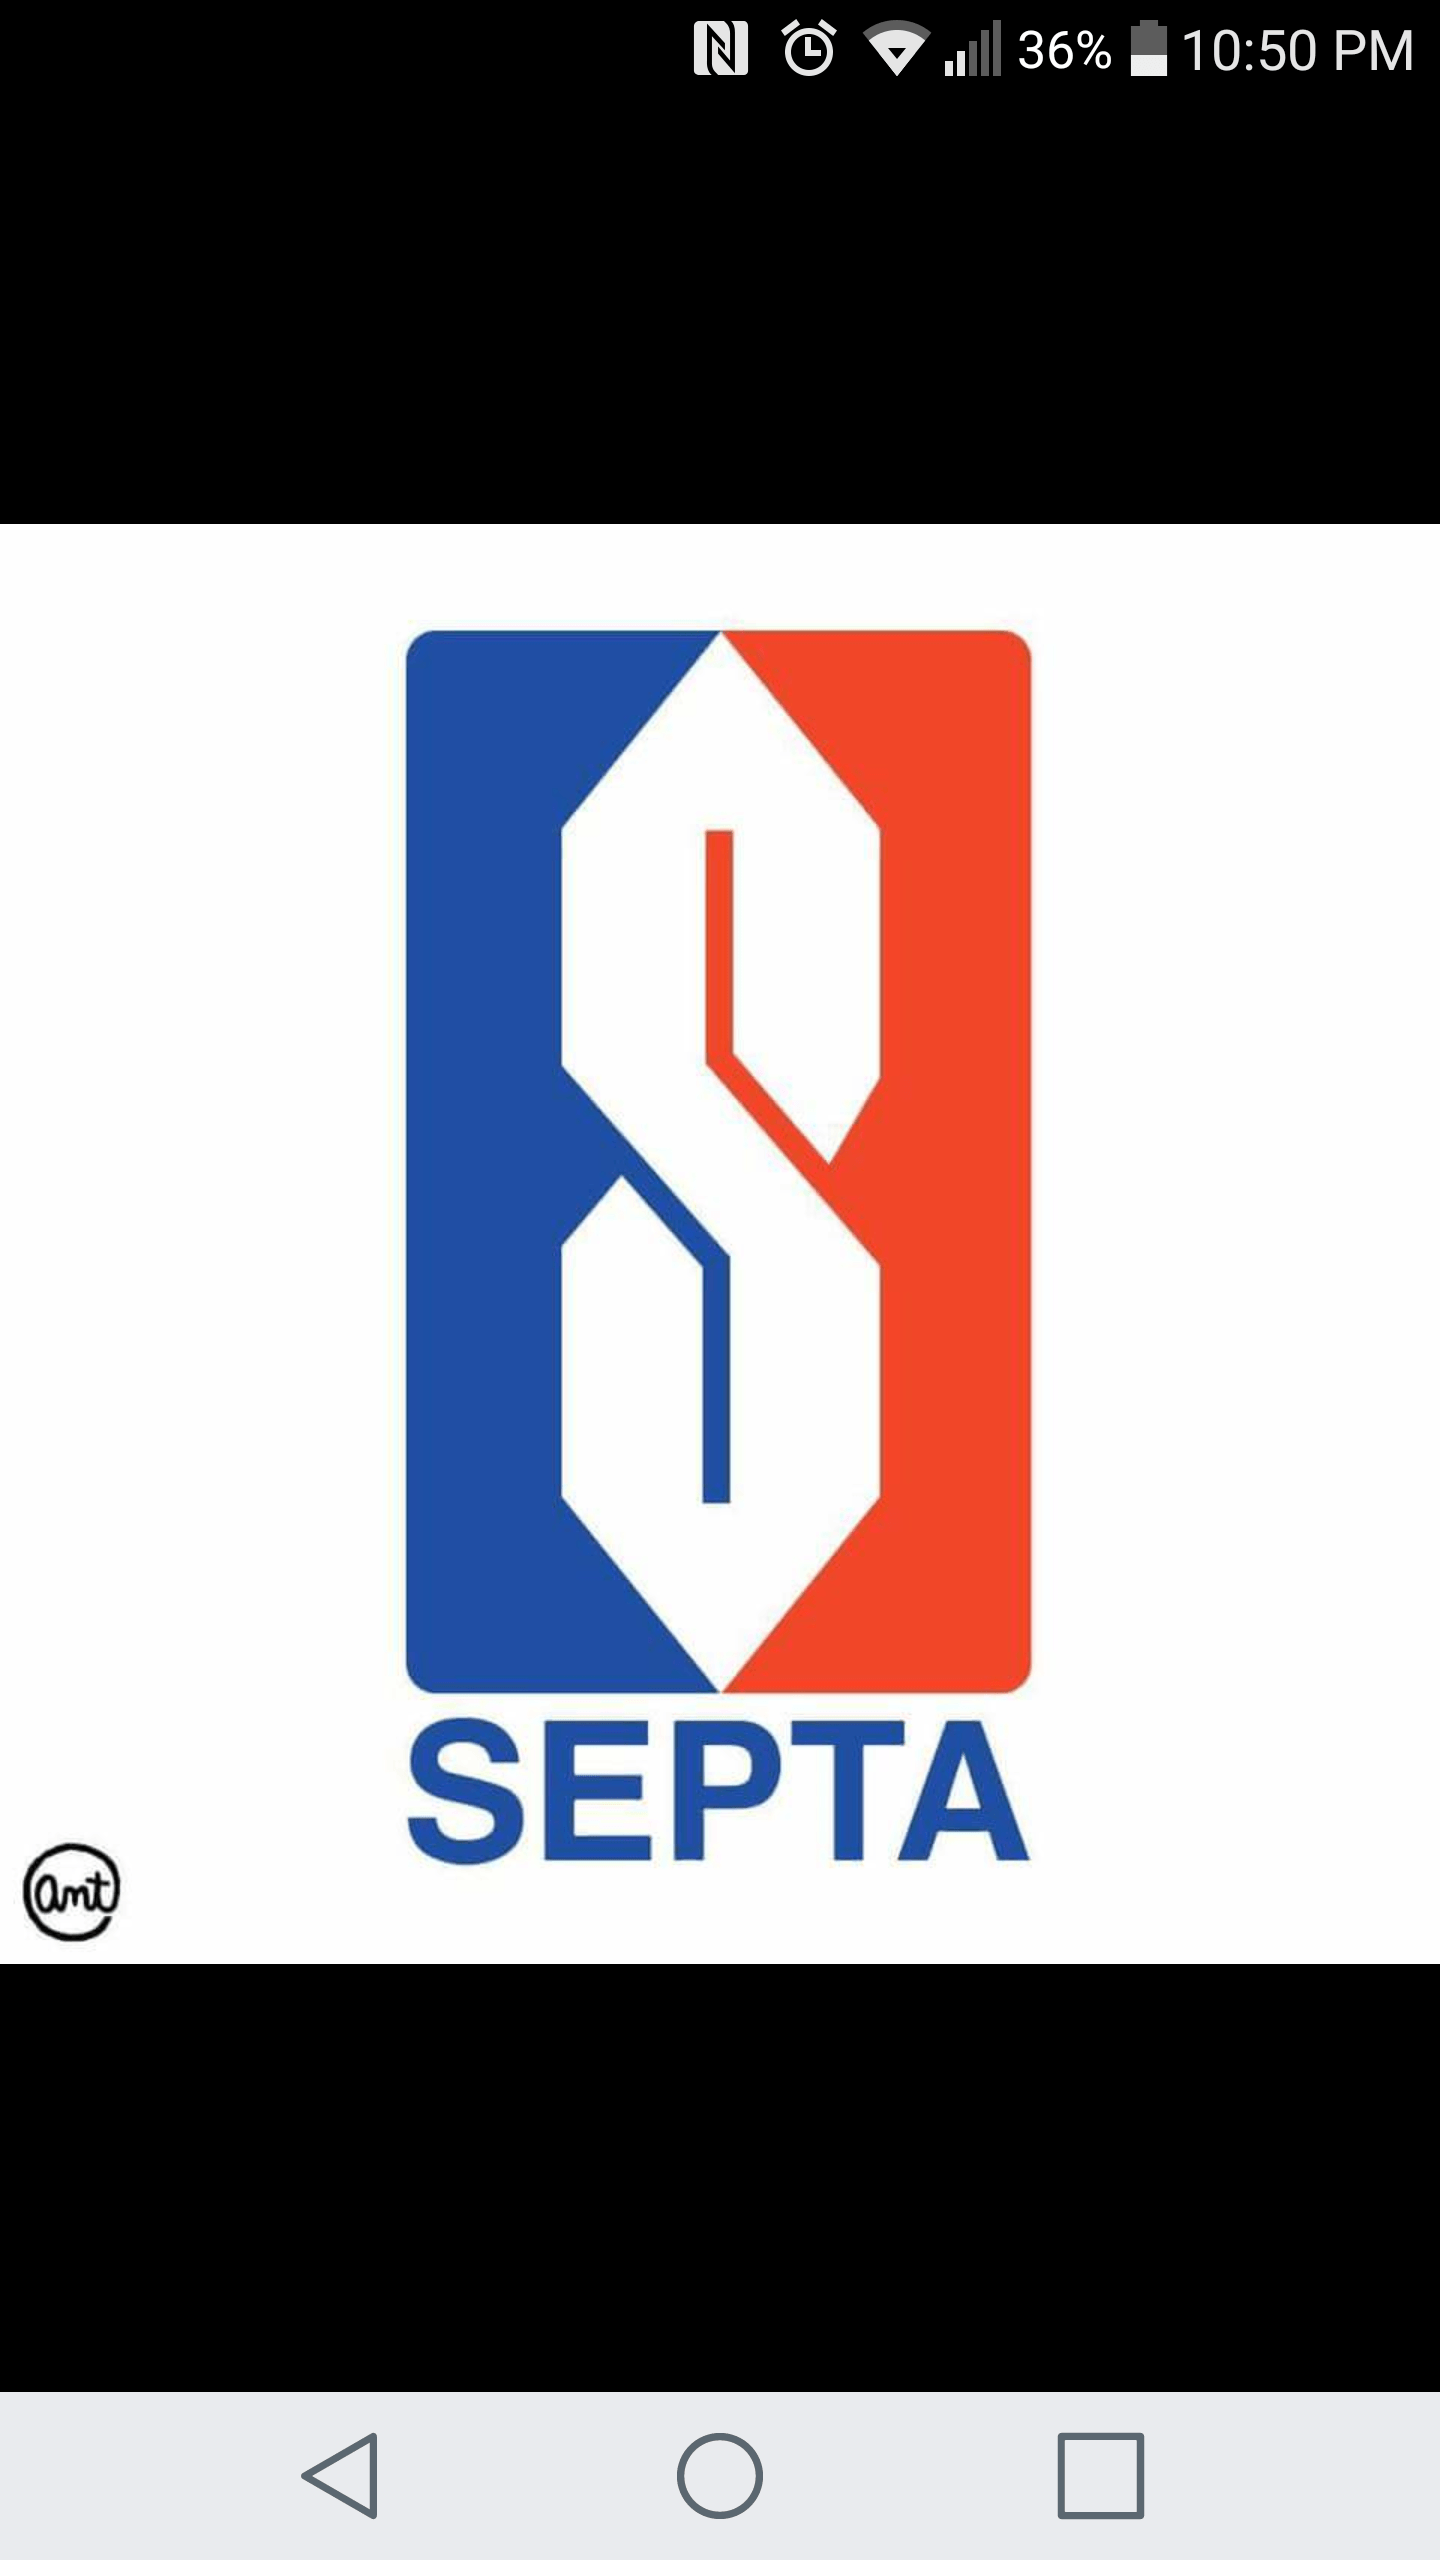 SEPTA Logo - New septa logo?